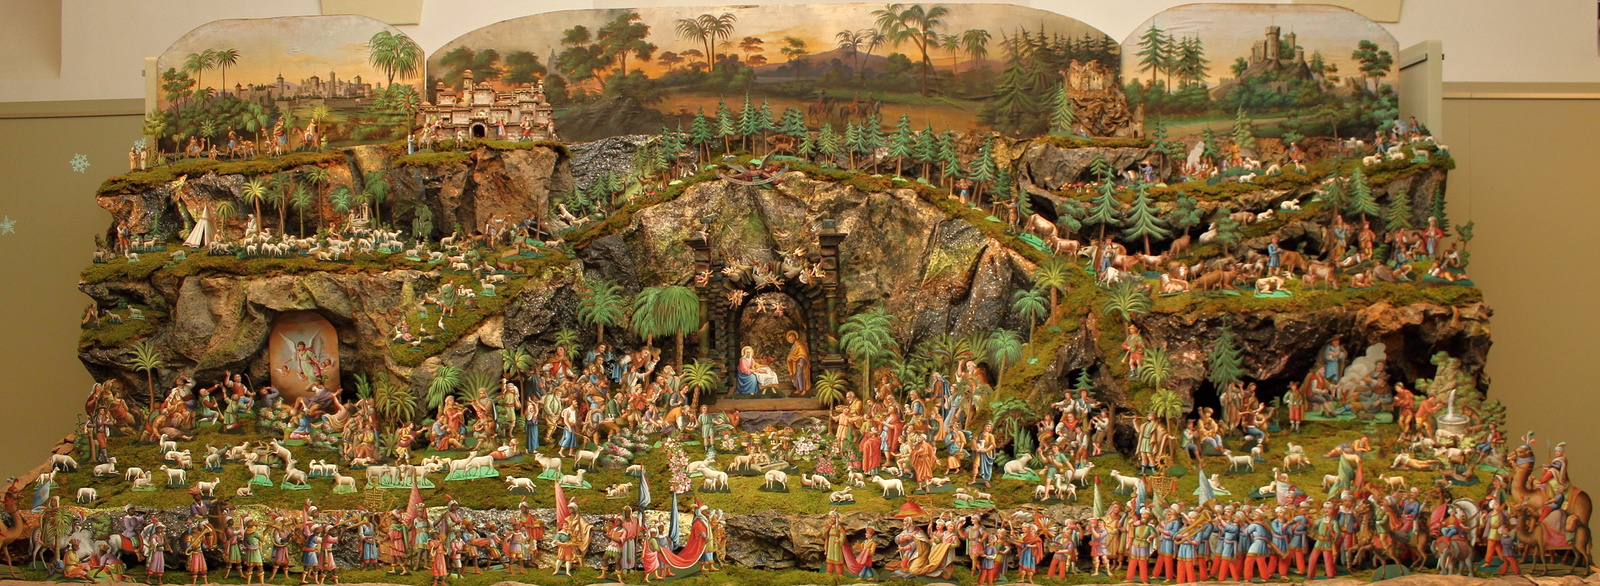 OBRAZEM: Vánoční výstava betlémů ukazuje betlémy z Rakouska a Třebíče -  Třebíčský deník